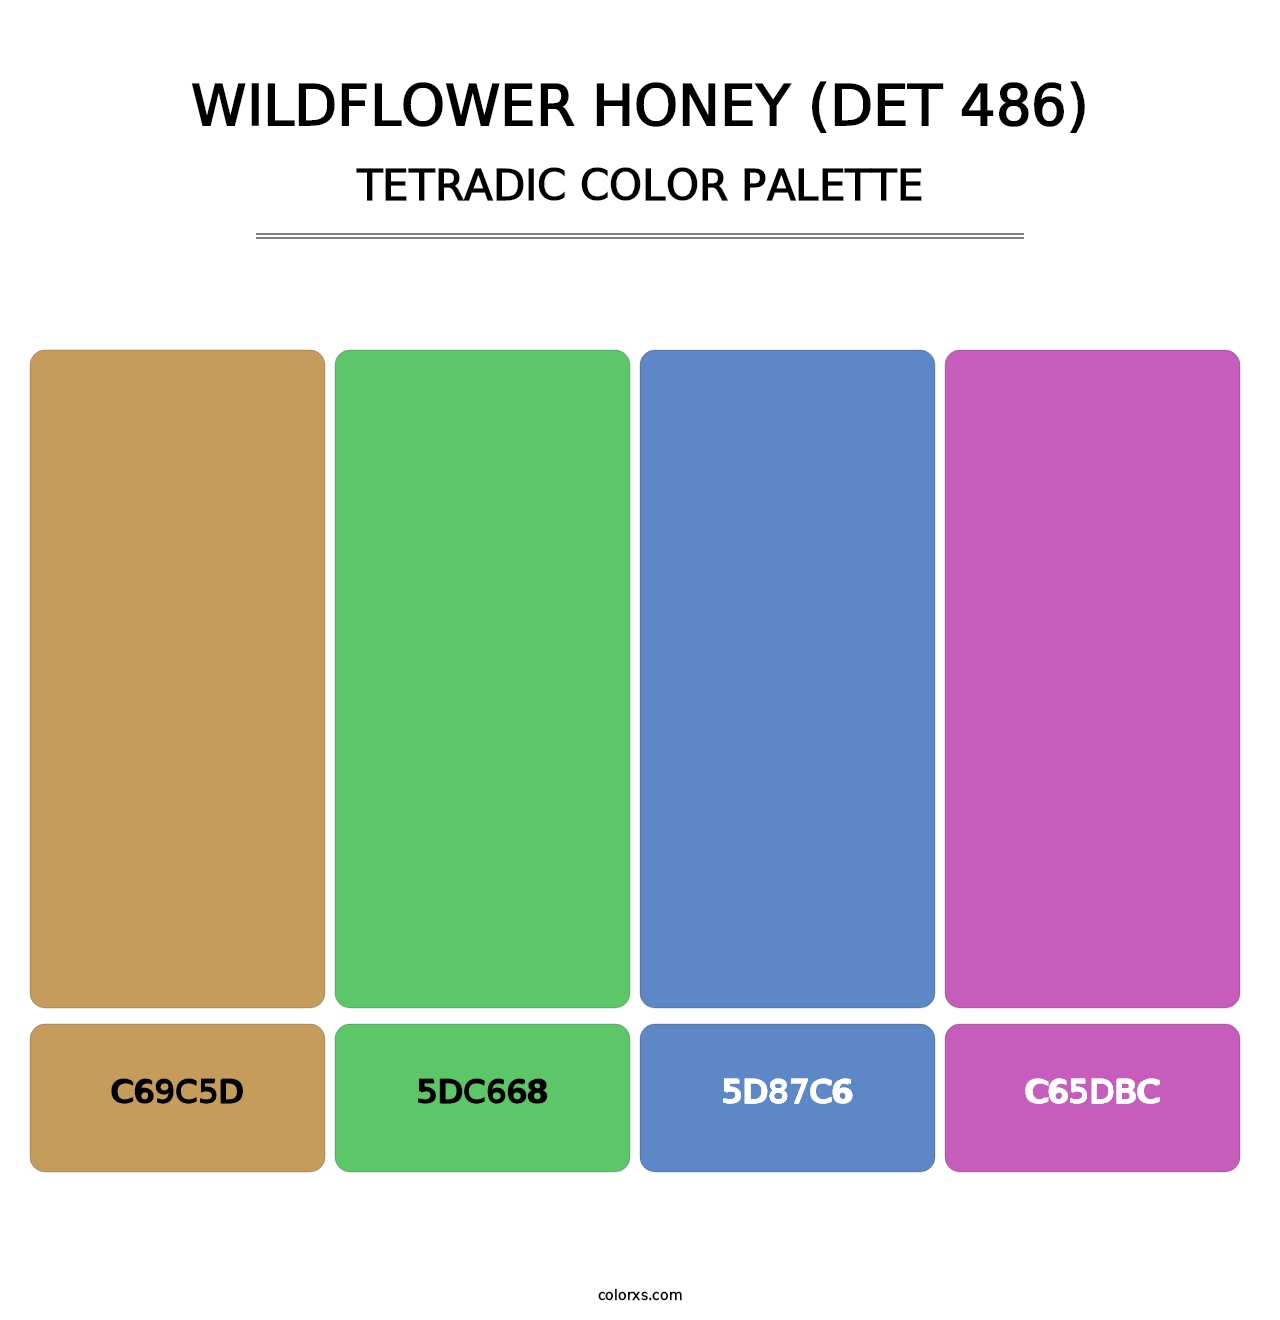 Wildflower Honey (DET 486) - Tetradic Color Palette